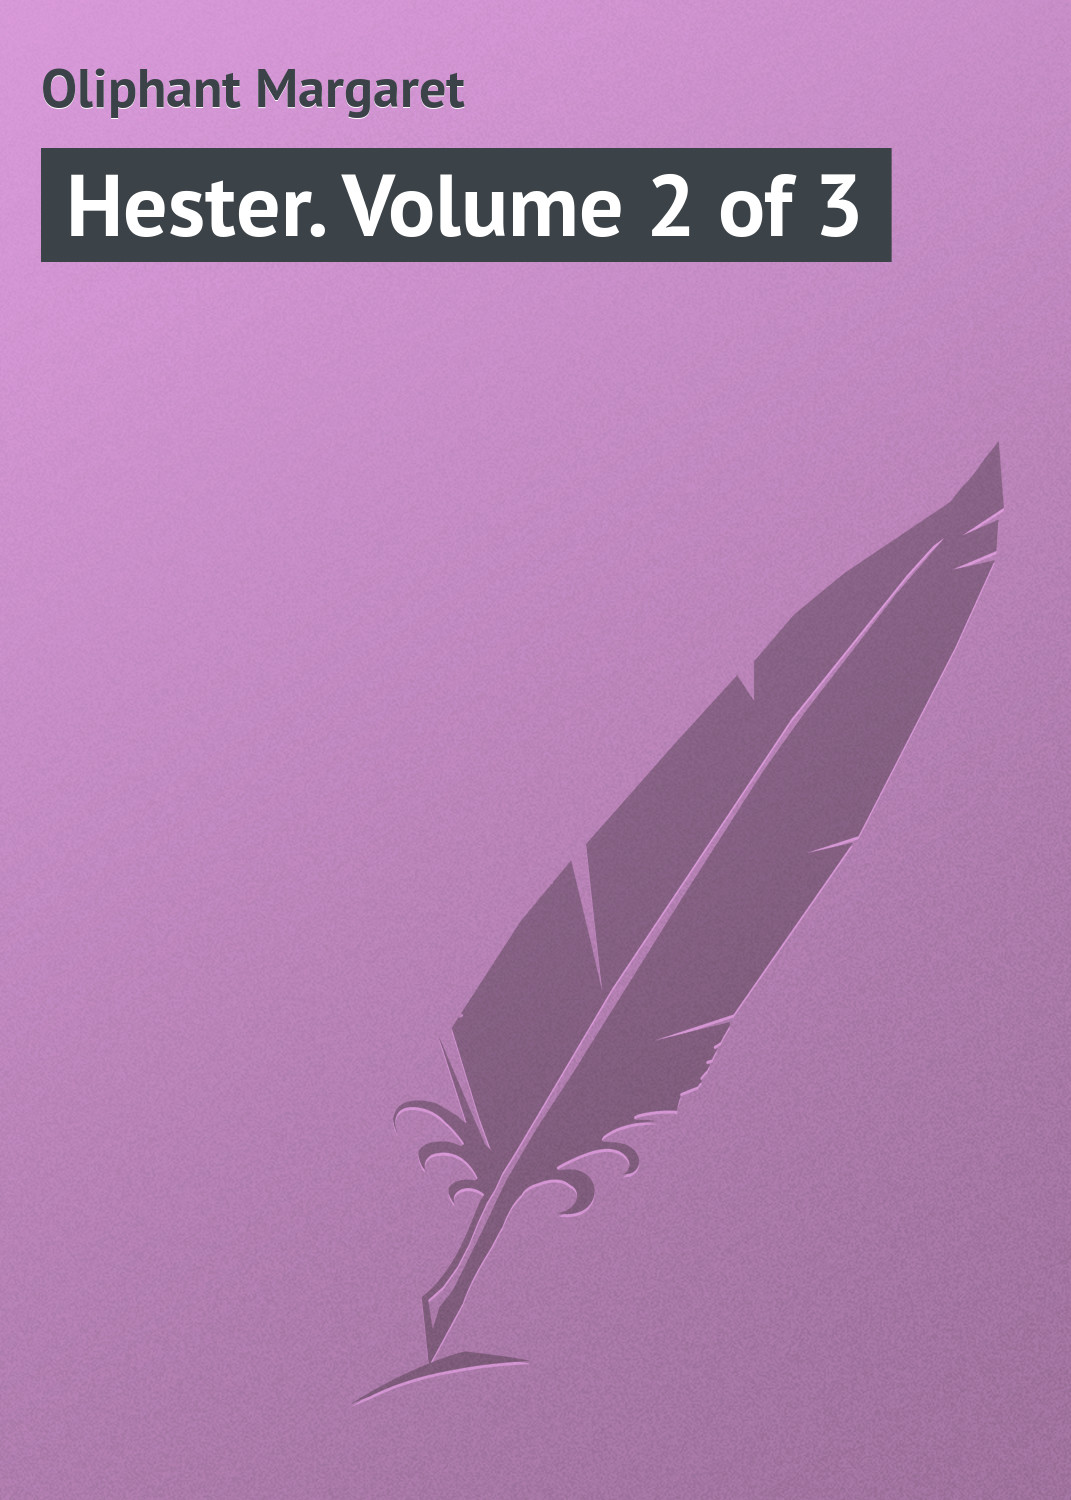 Книга Hester. Volume 2 of 3 из серии , созданная Margaret Oliphant, может относится к жанру Зарубежная классика, Иностранные языки. Стоимость электронной книги Hester. Volume 2 of 3 с идентификатором 23162739 составляет 5.99 руб.